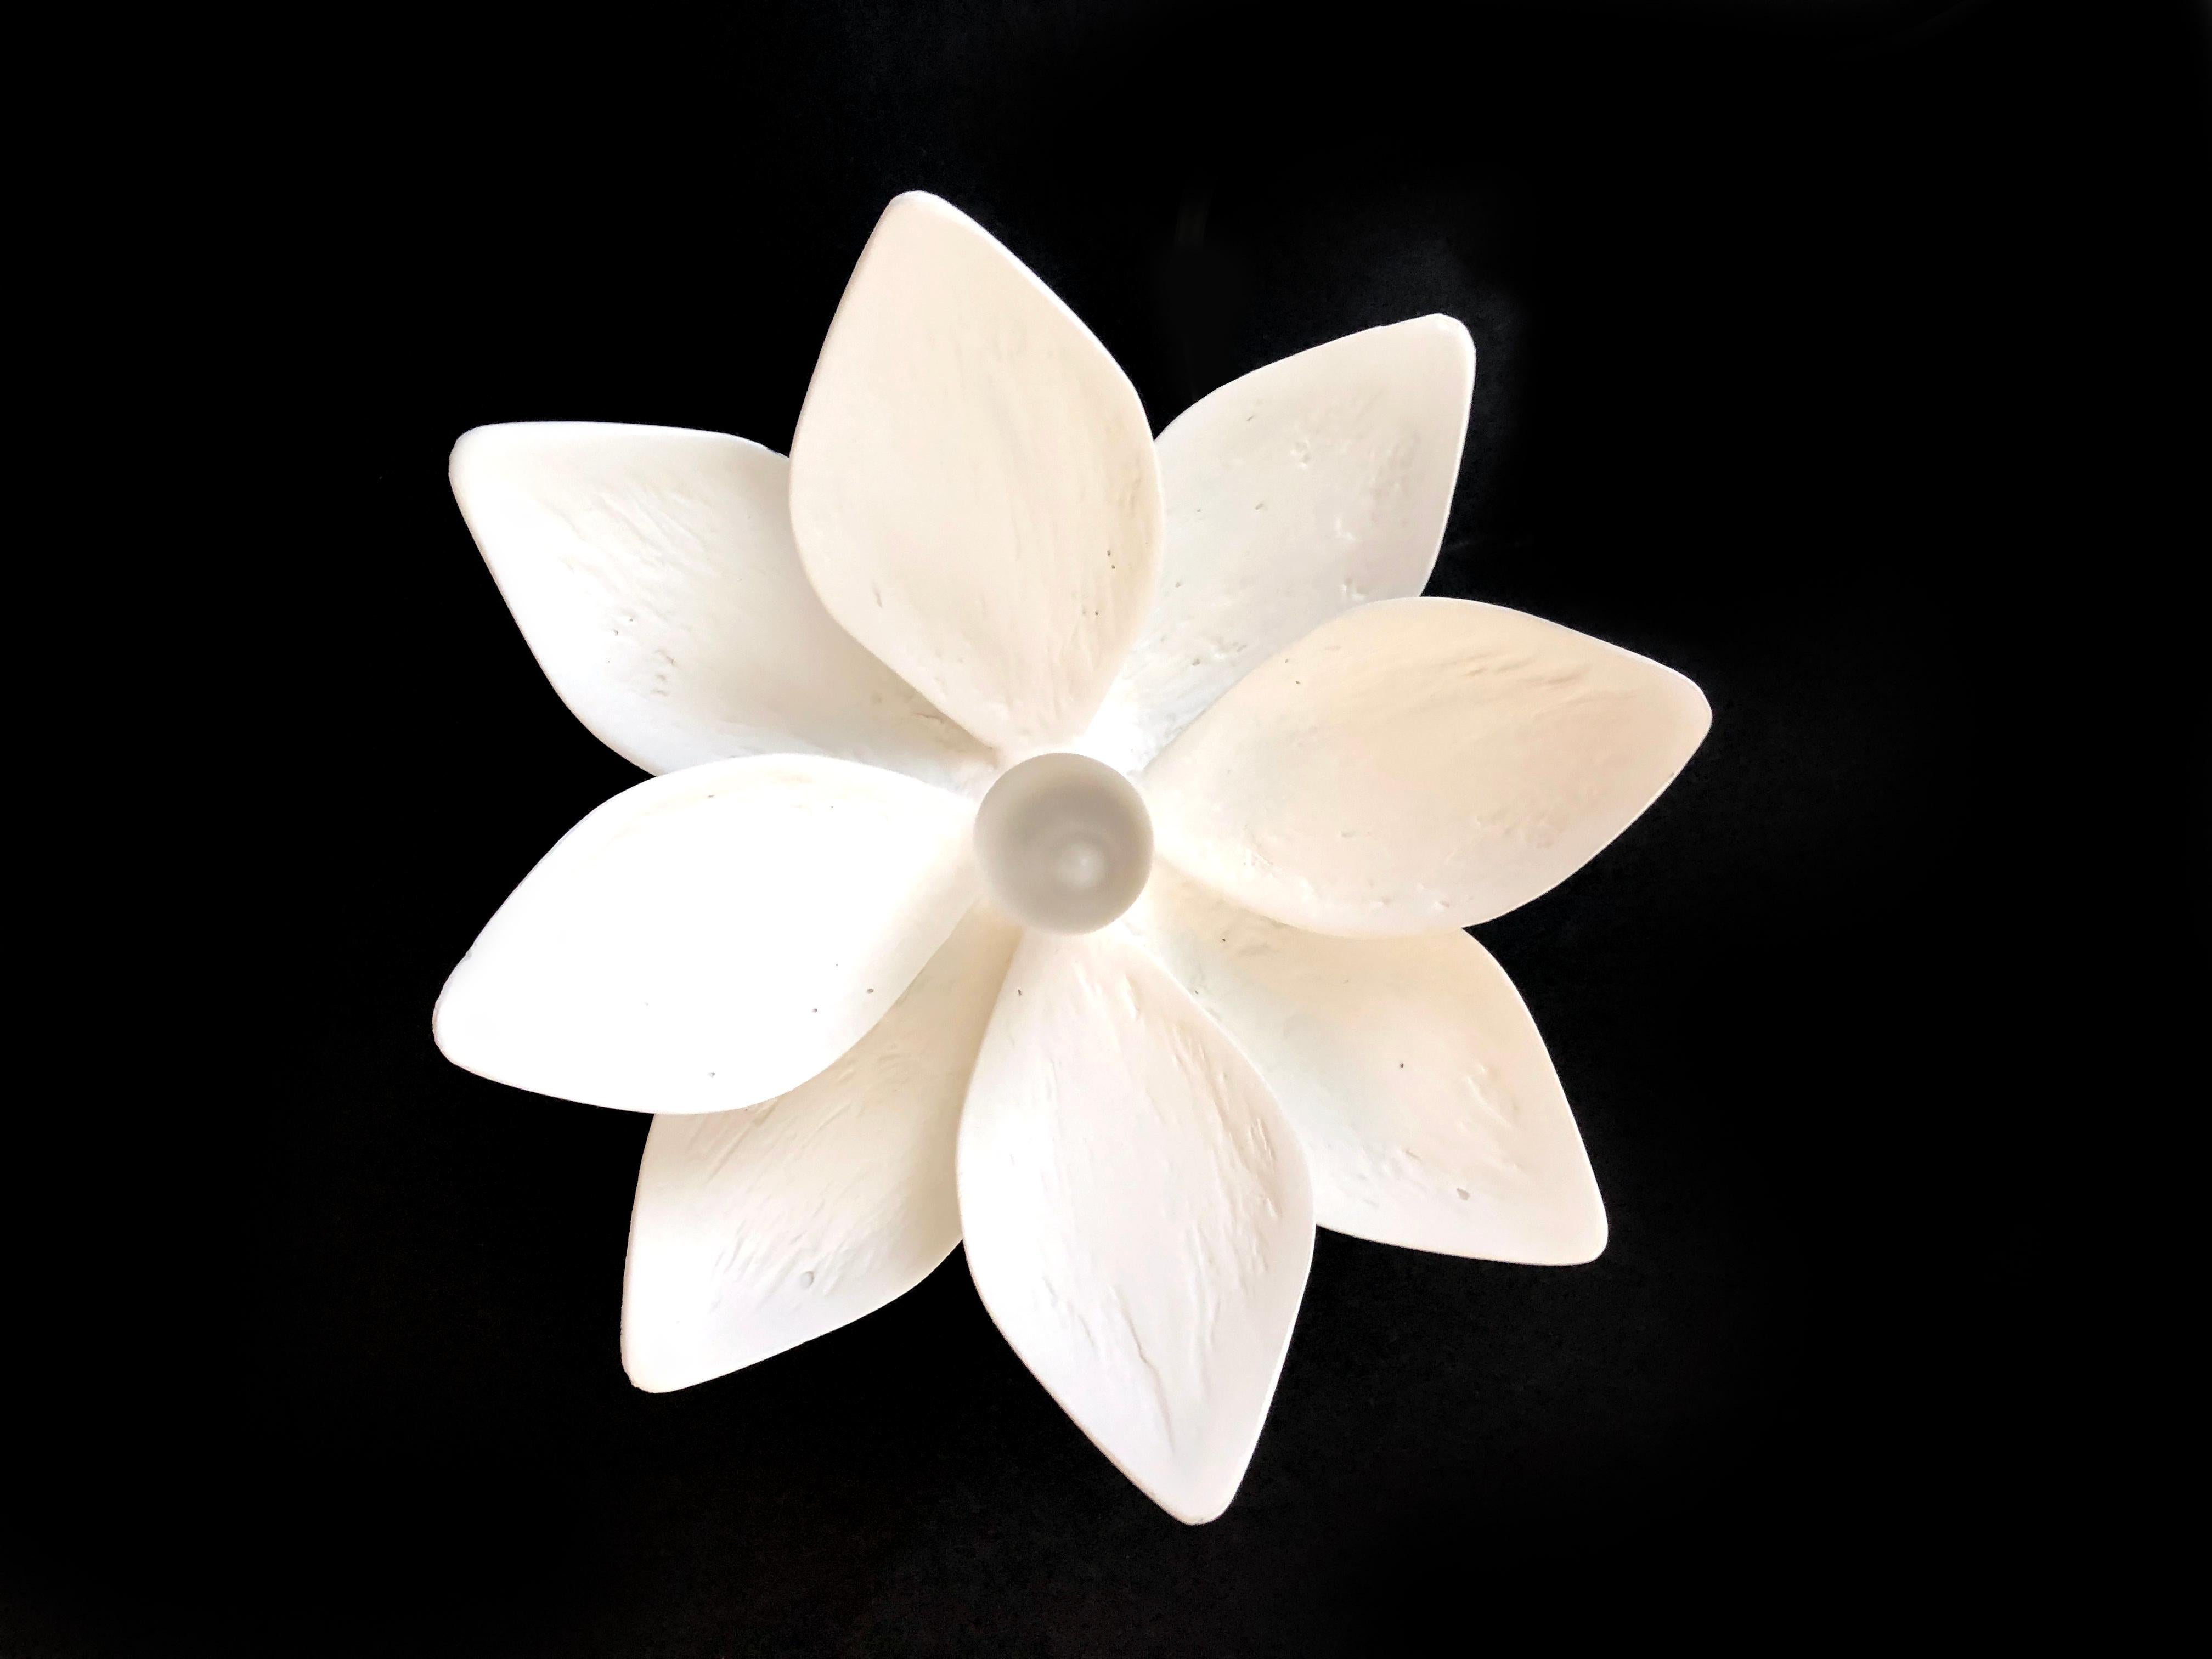 Cette applique simple, mais ornée, présente notre finition signature en plâtre de Paris. Sa fleur de magnolia fera entrer la nature à l'intérieur et a été conçue pour compléter notre lustre Vosges. Cette applique polyvalente accentuera la beauté de